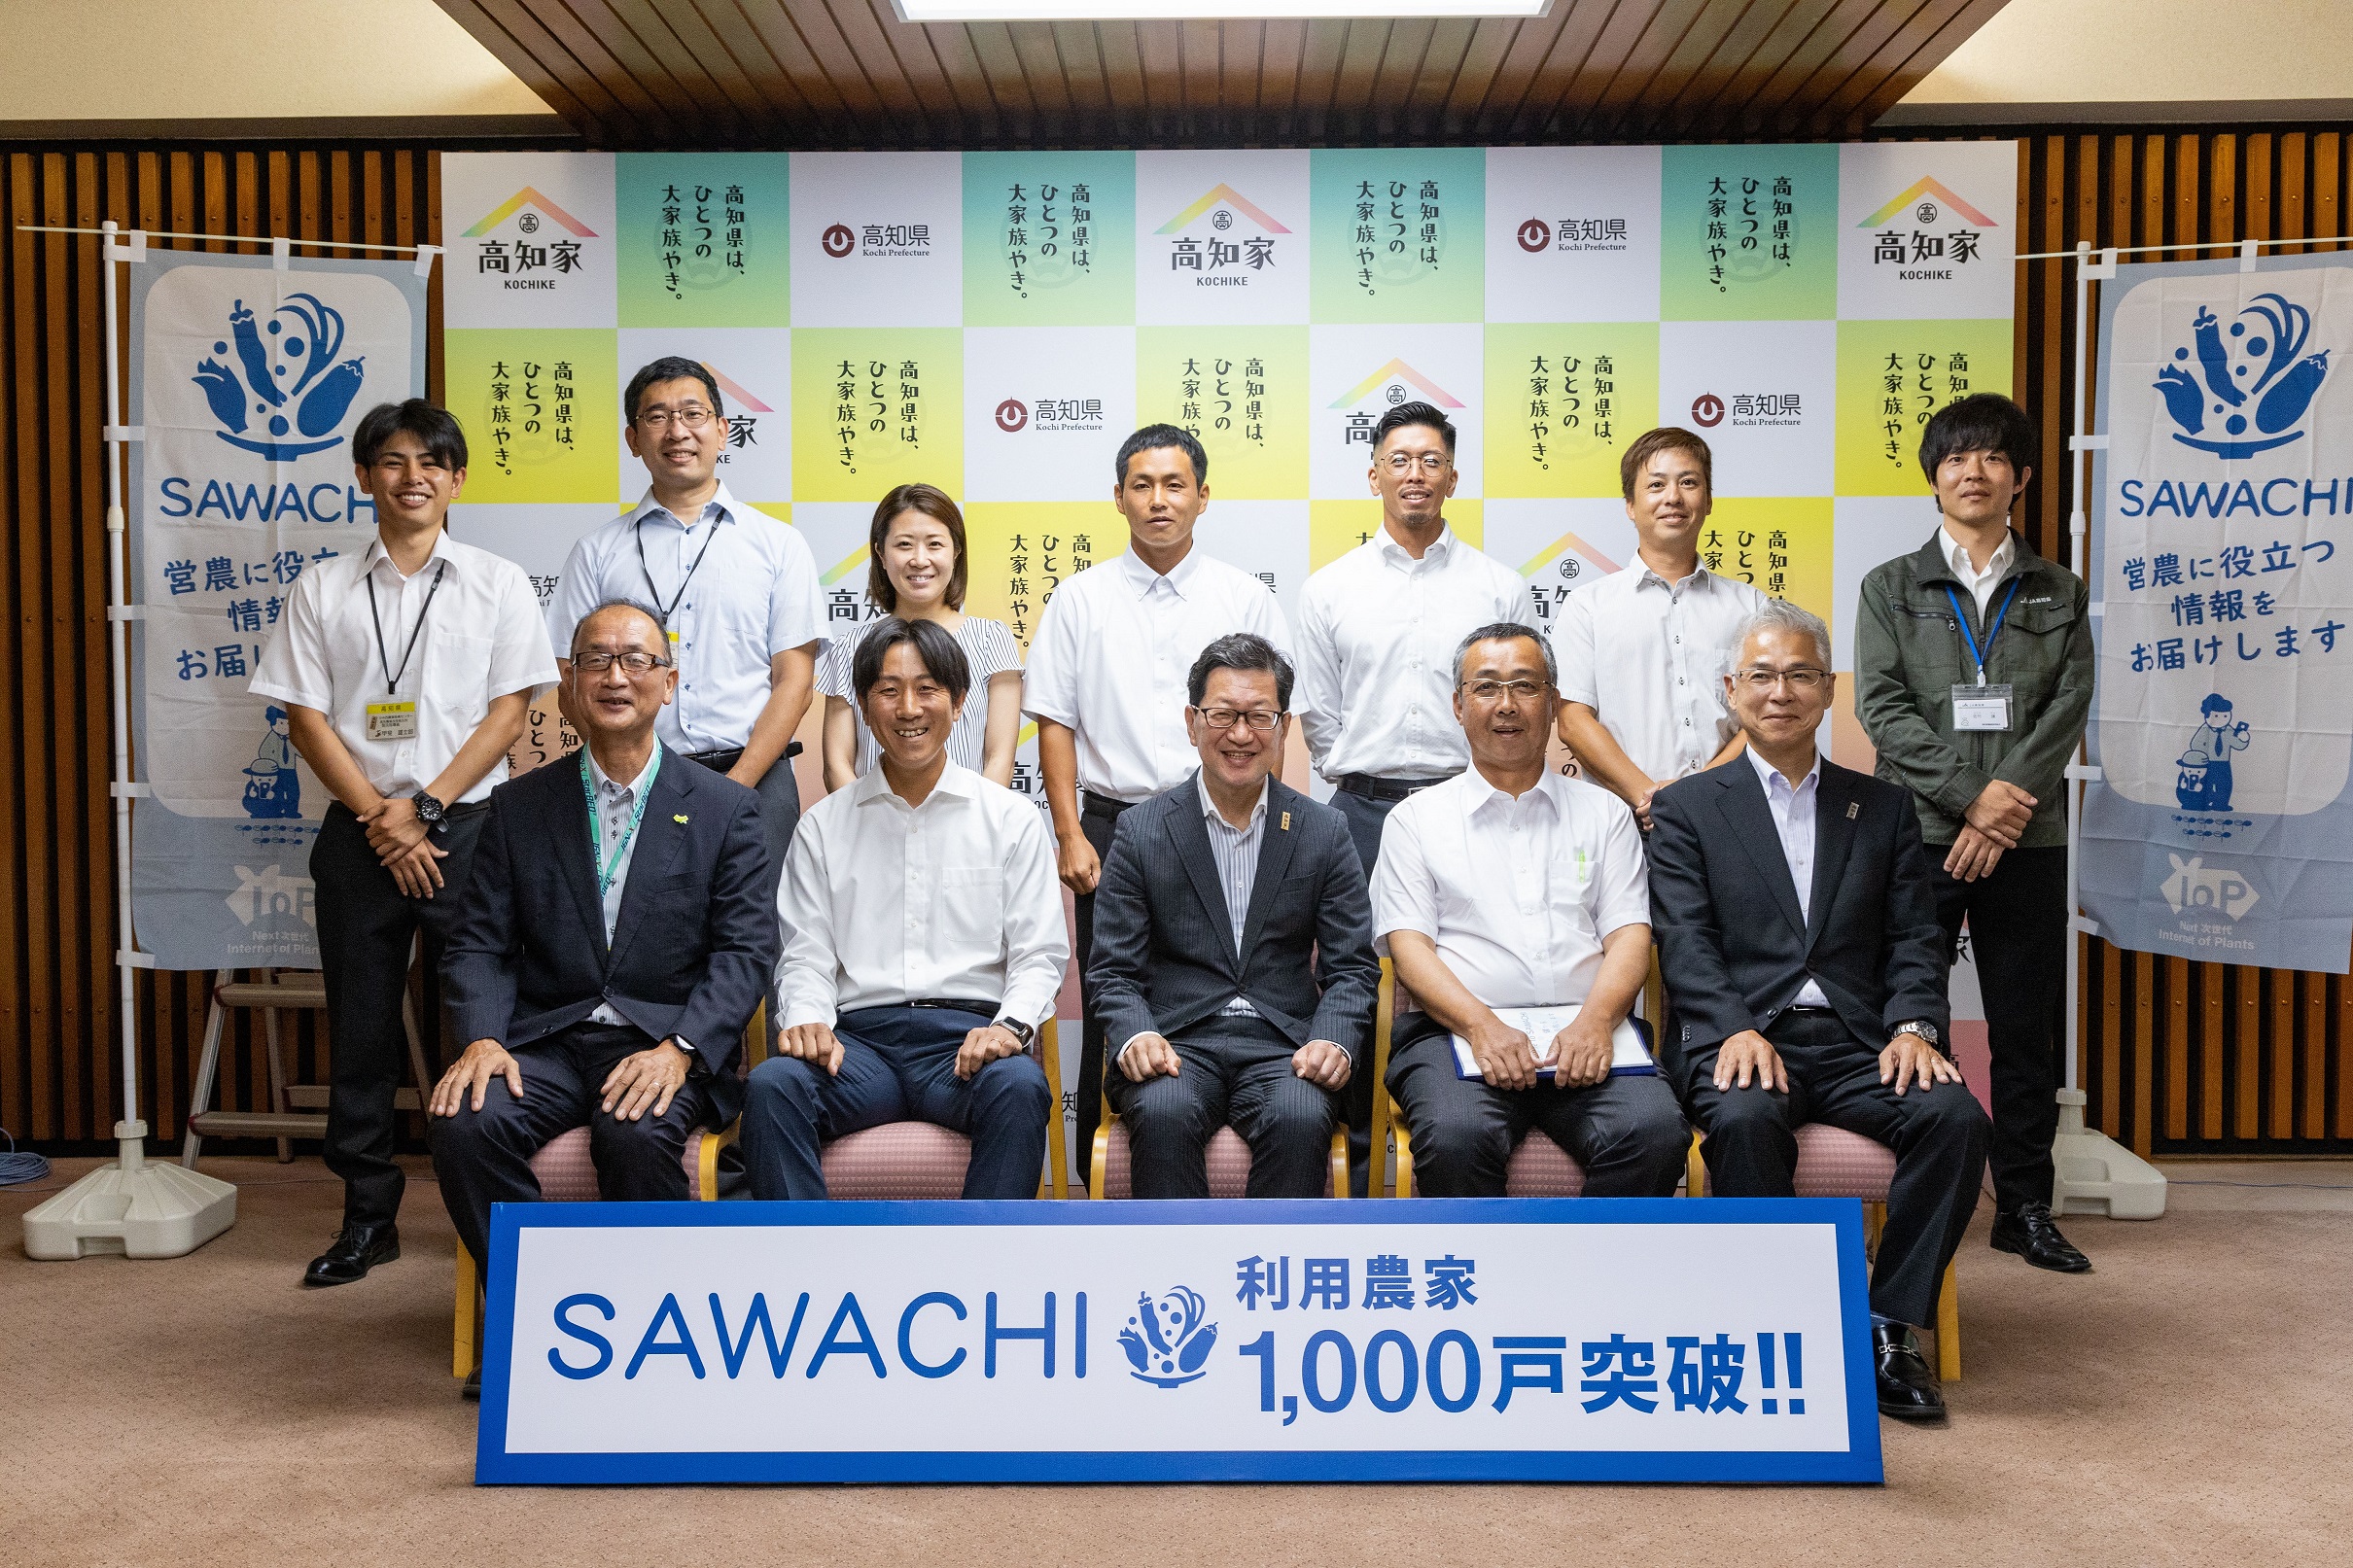 高知県、IoPクラウド「SAWACHI」を利用する農家数が1,000戸突破[ニュース]